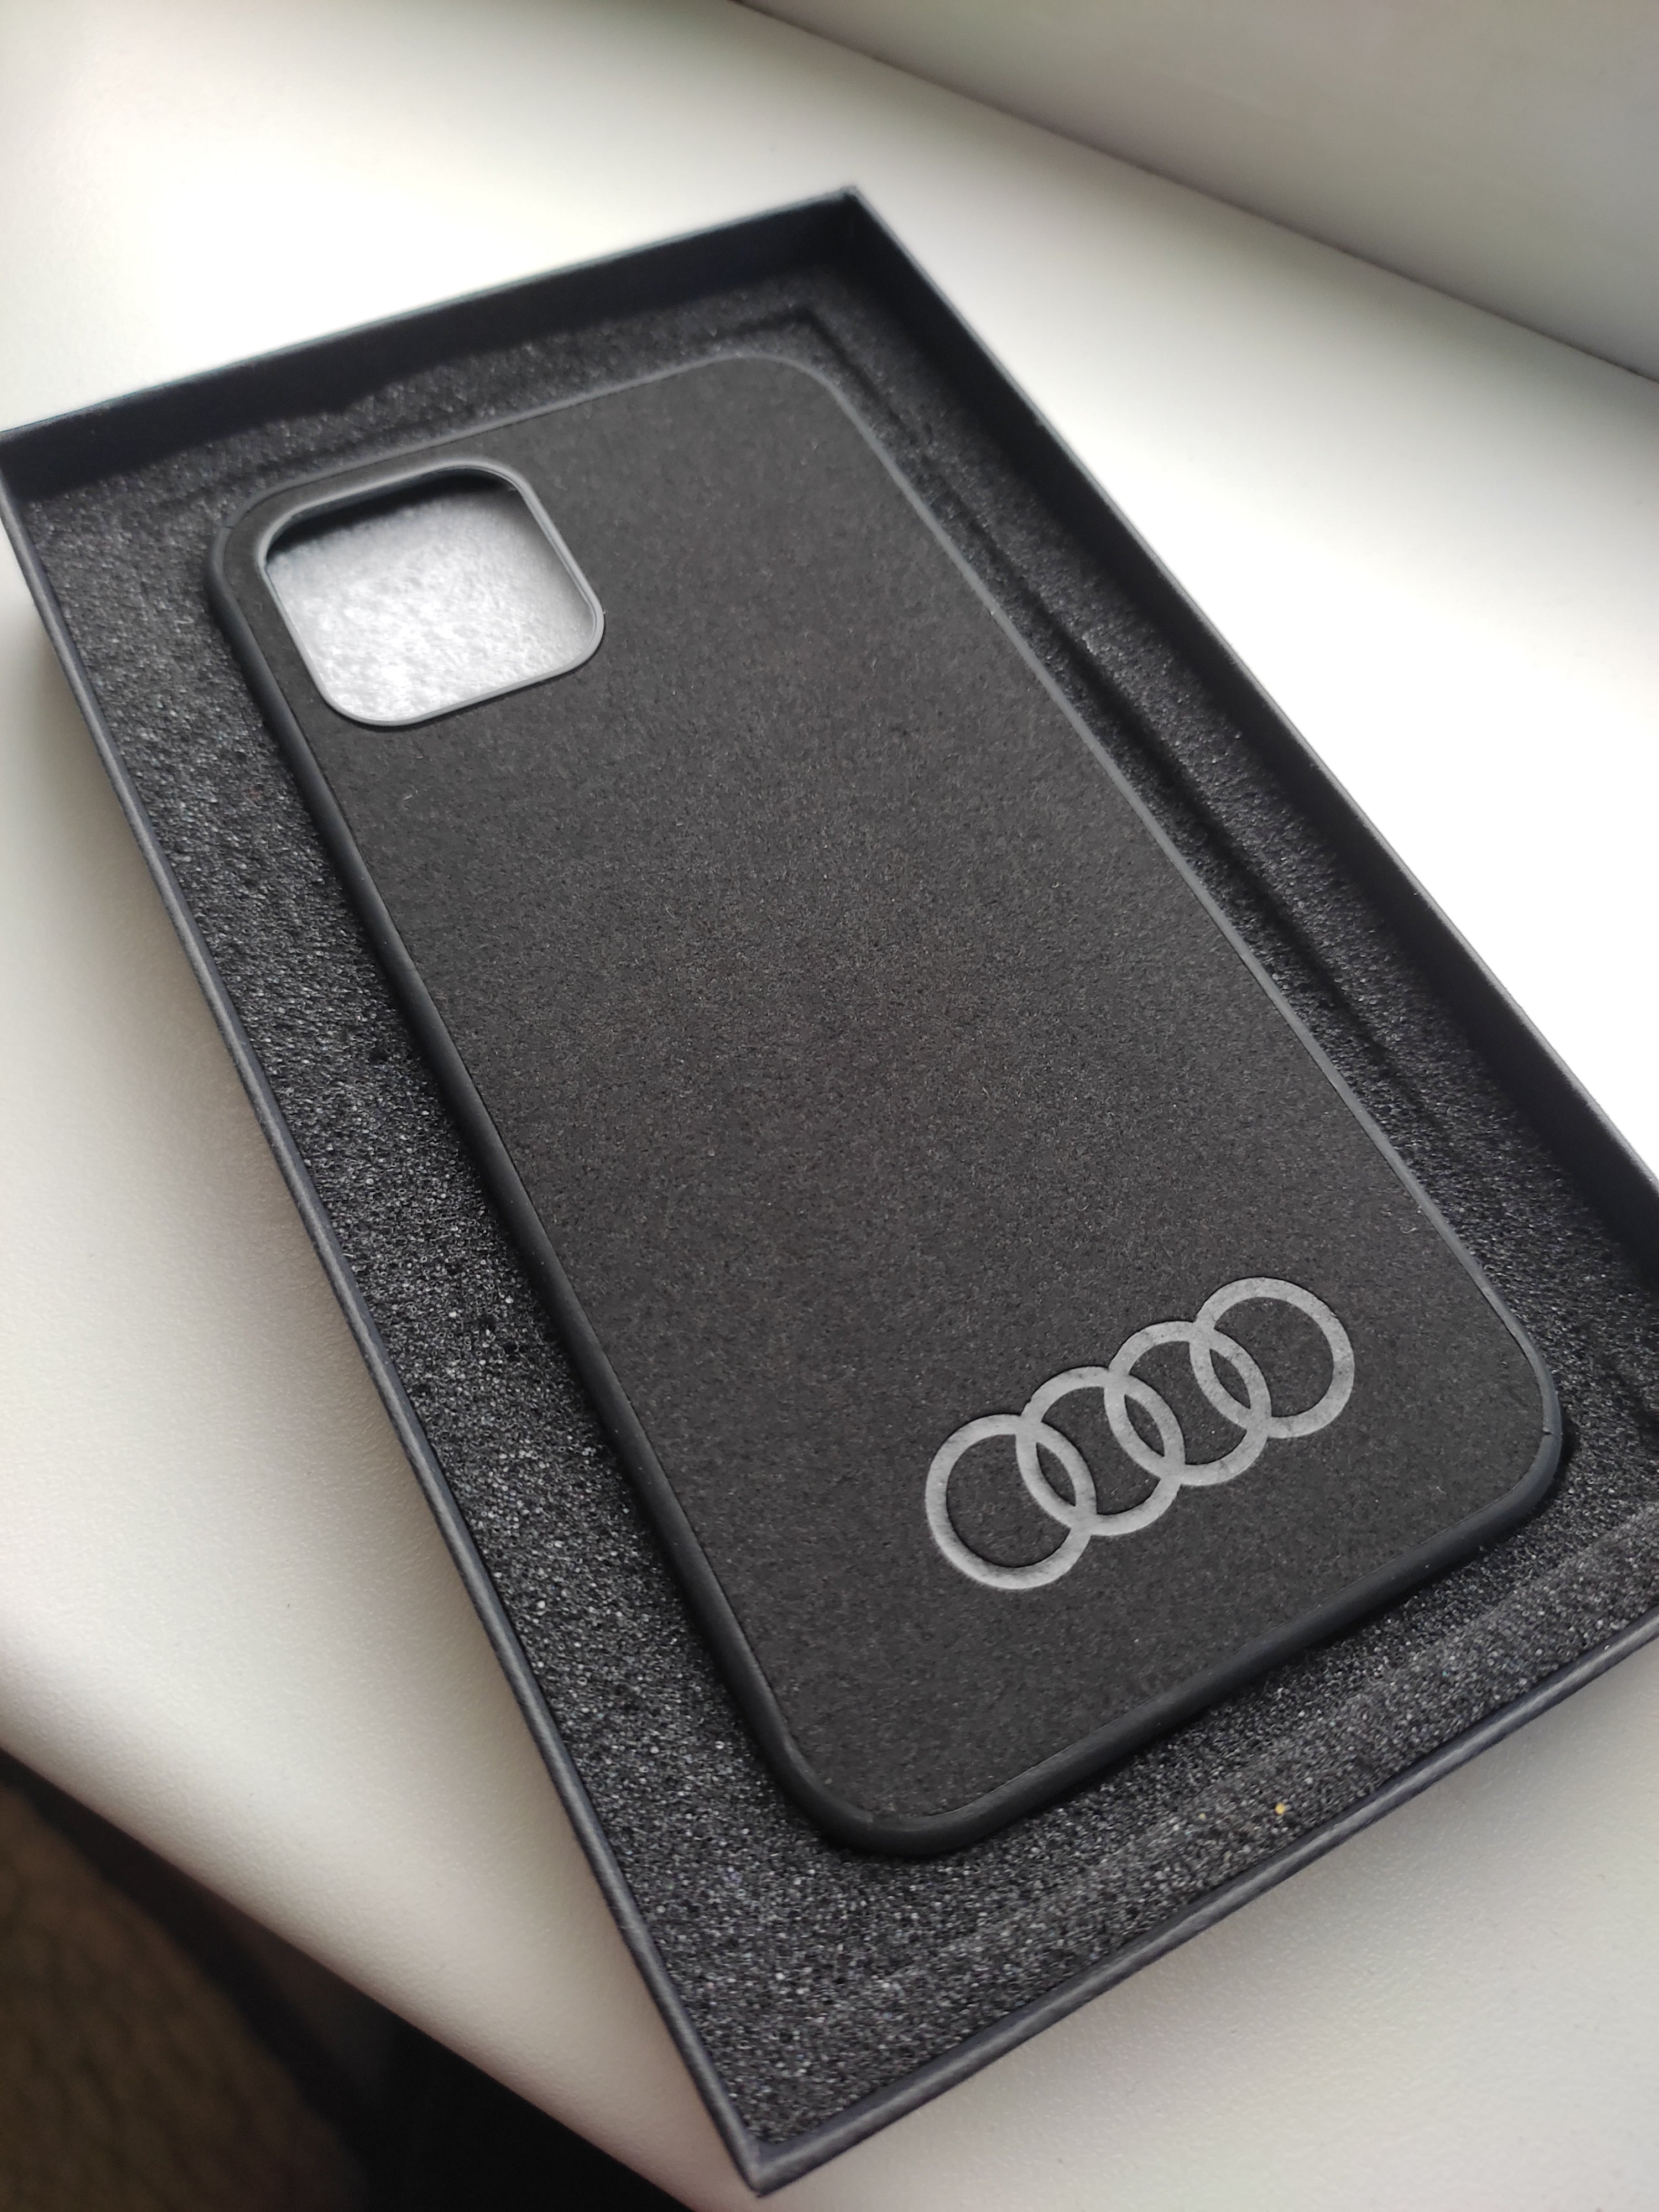 Audi phone case - .de